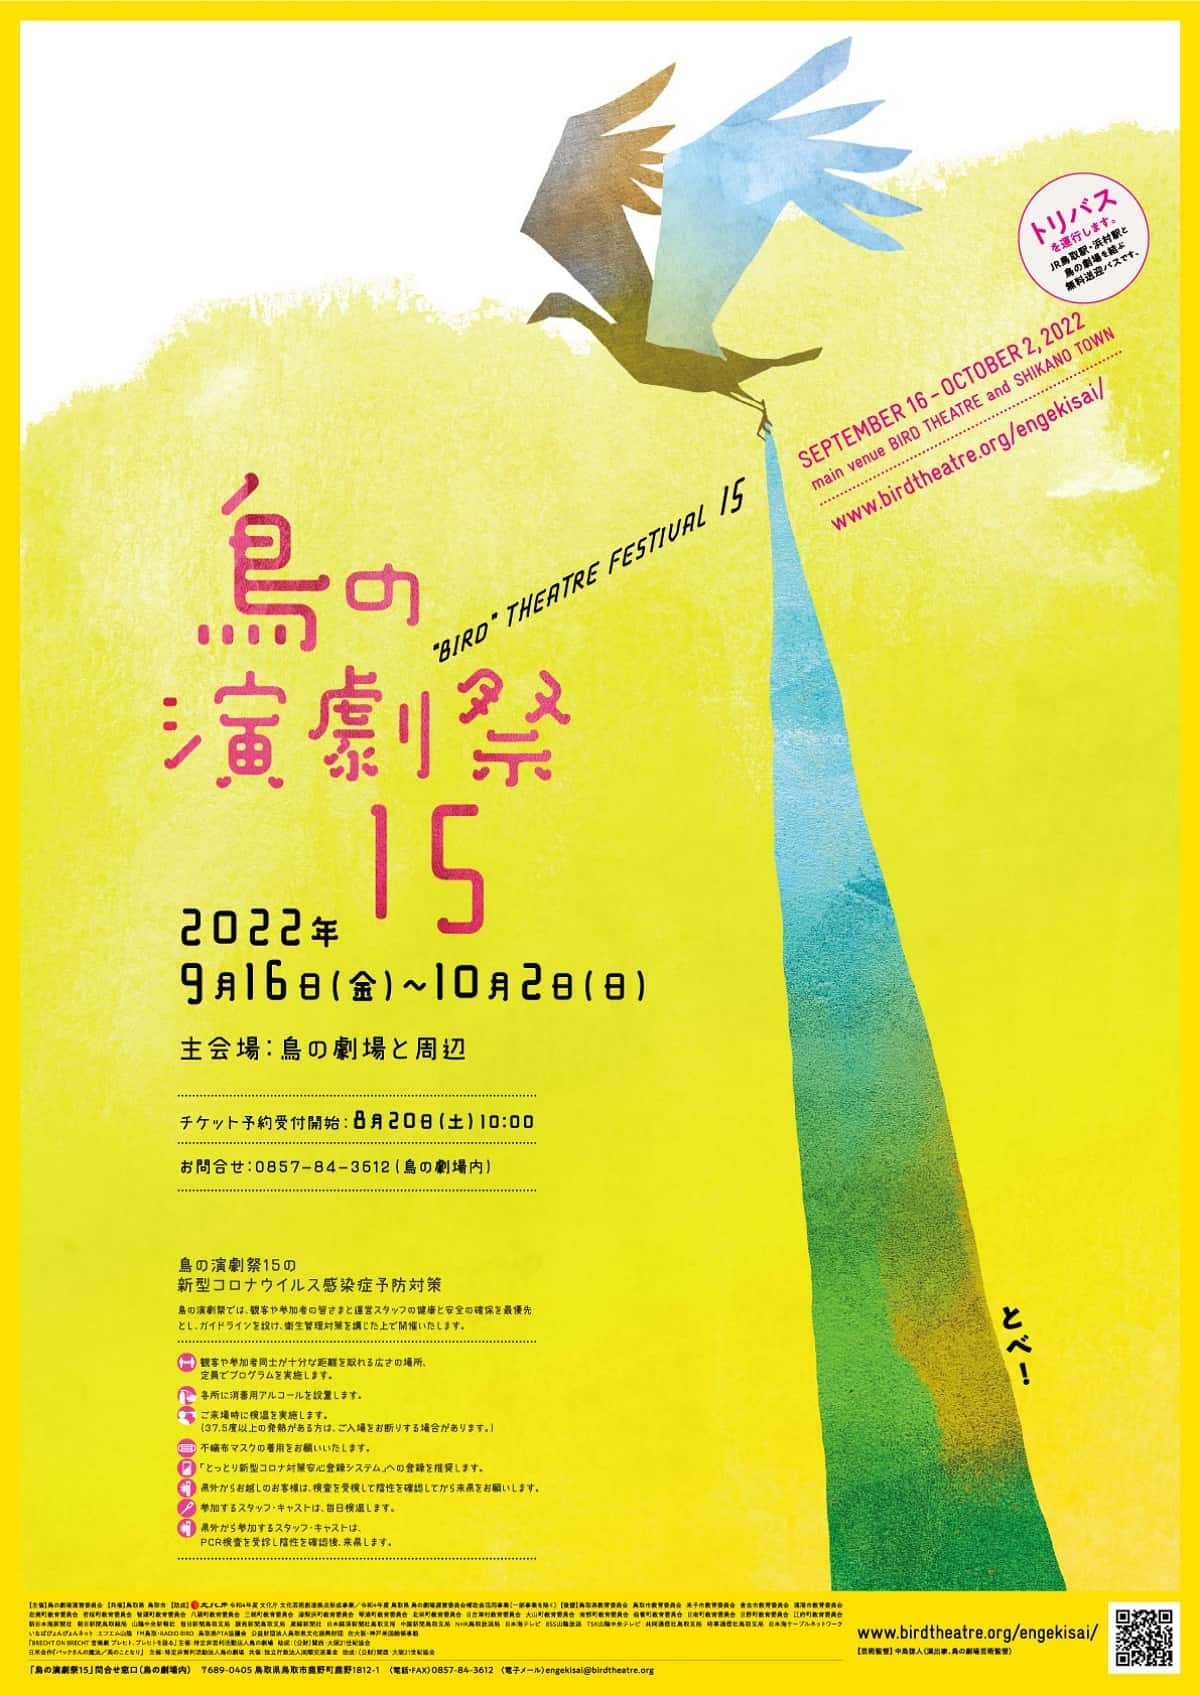 鳥の劇場で開催されるイベント「鳥の演劇祭15」のポスター